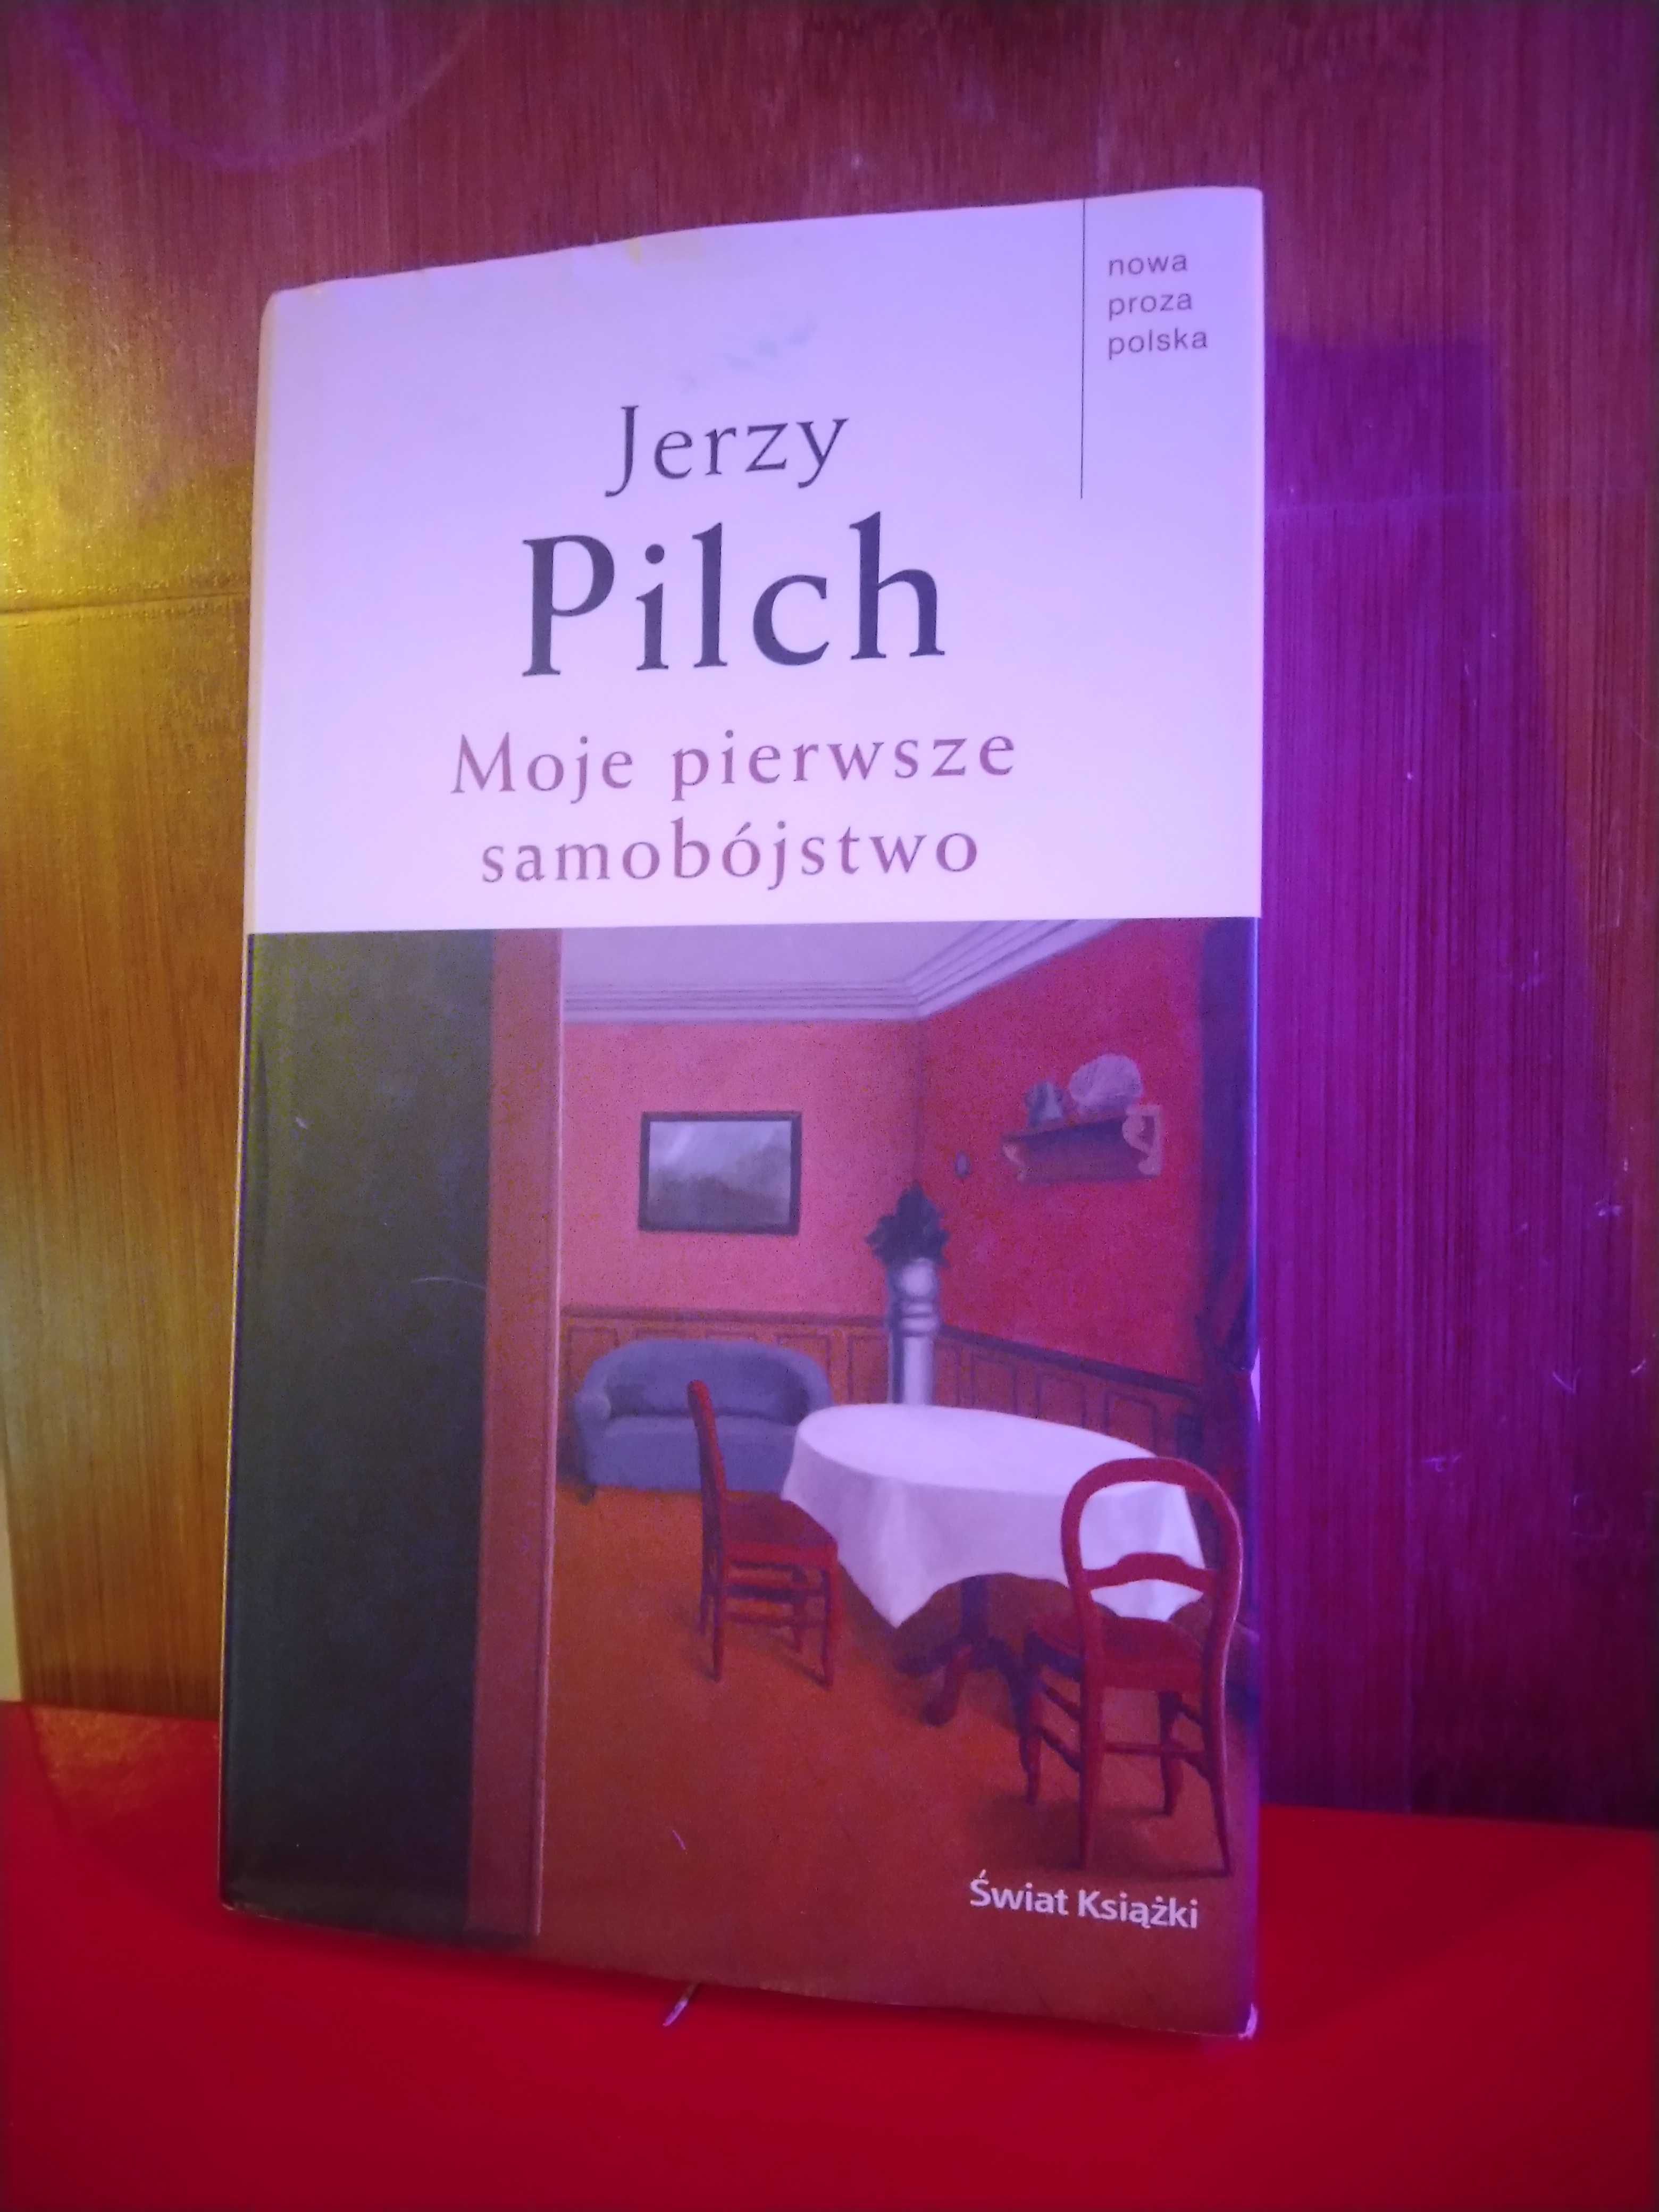 Moje pierwsze samobójstwo - Jerzy Pilch